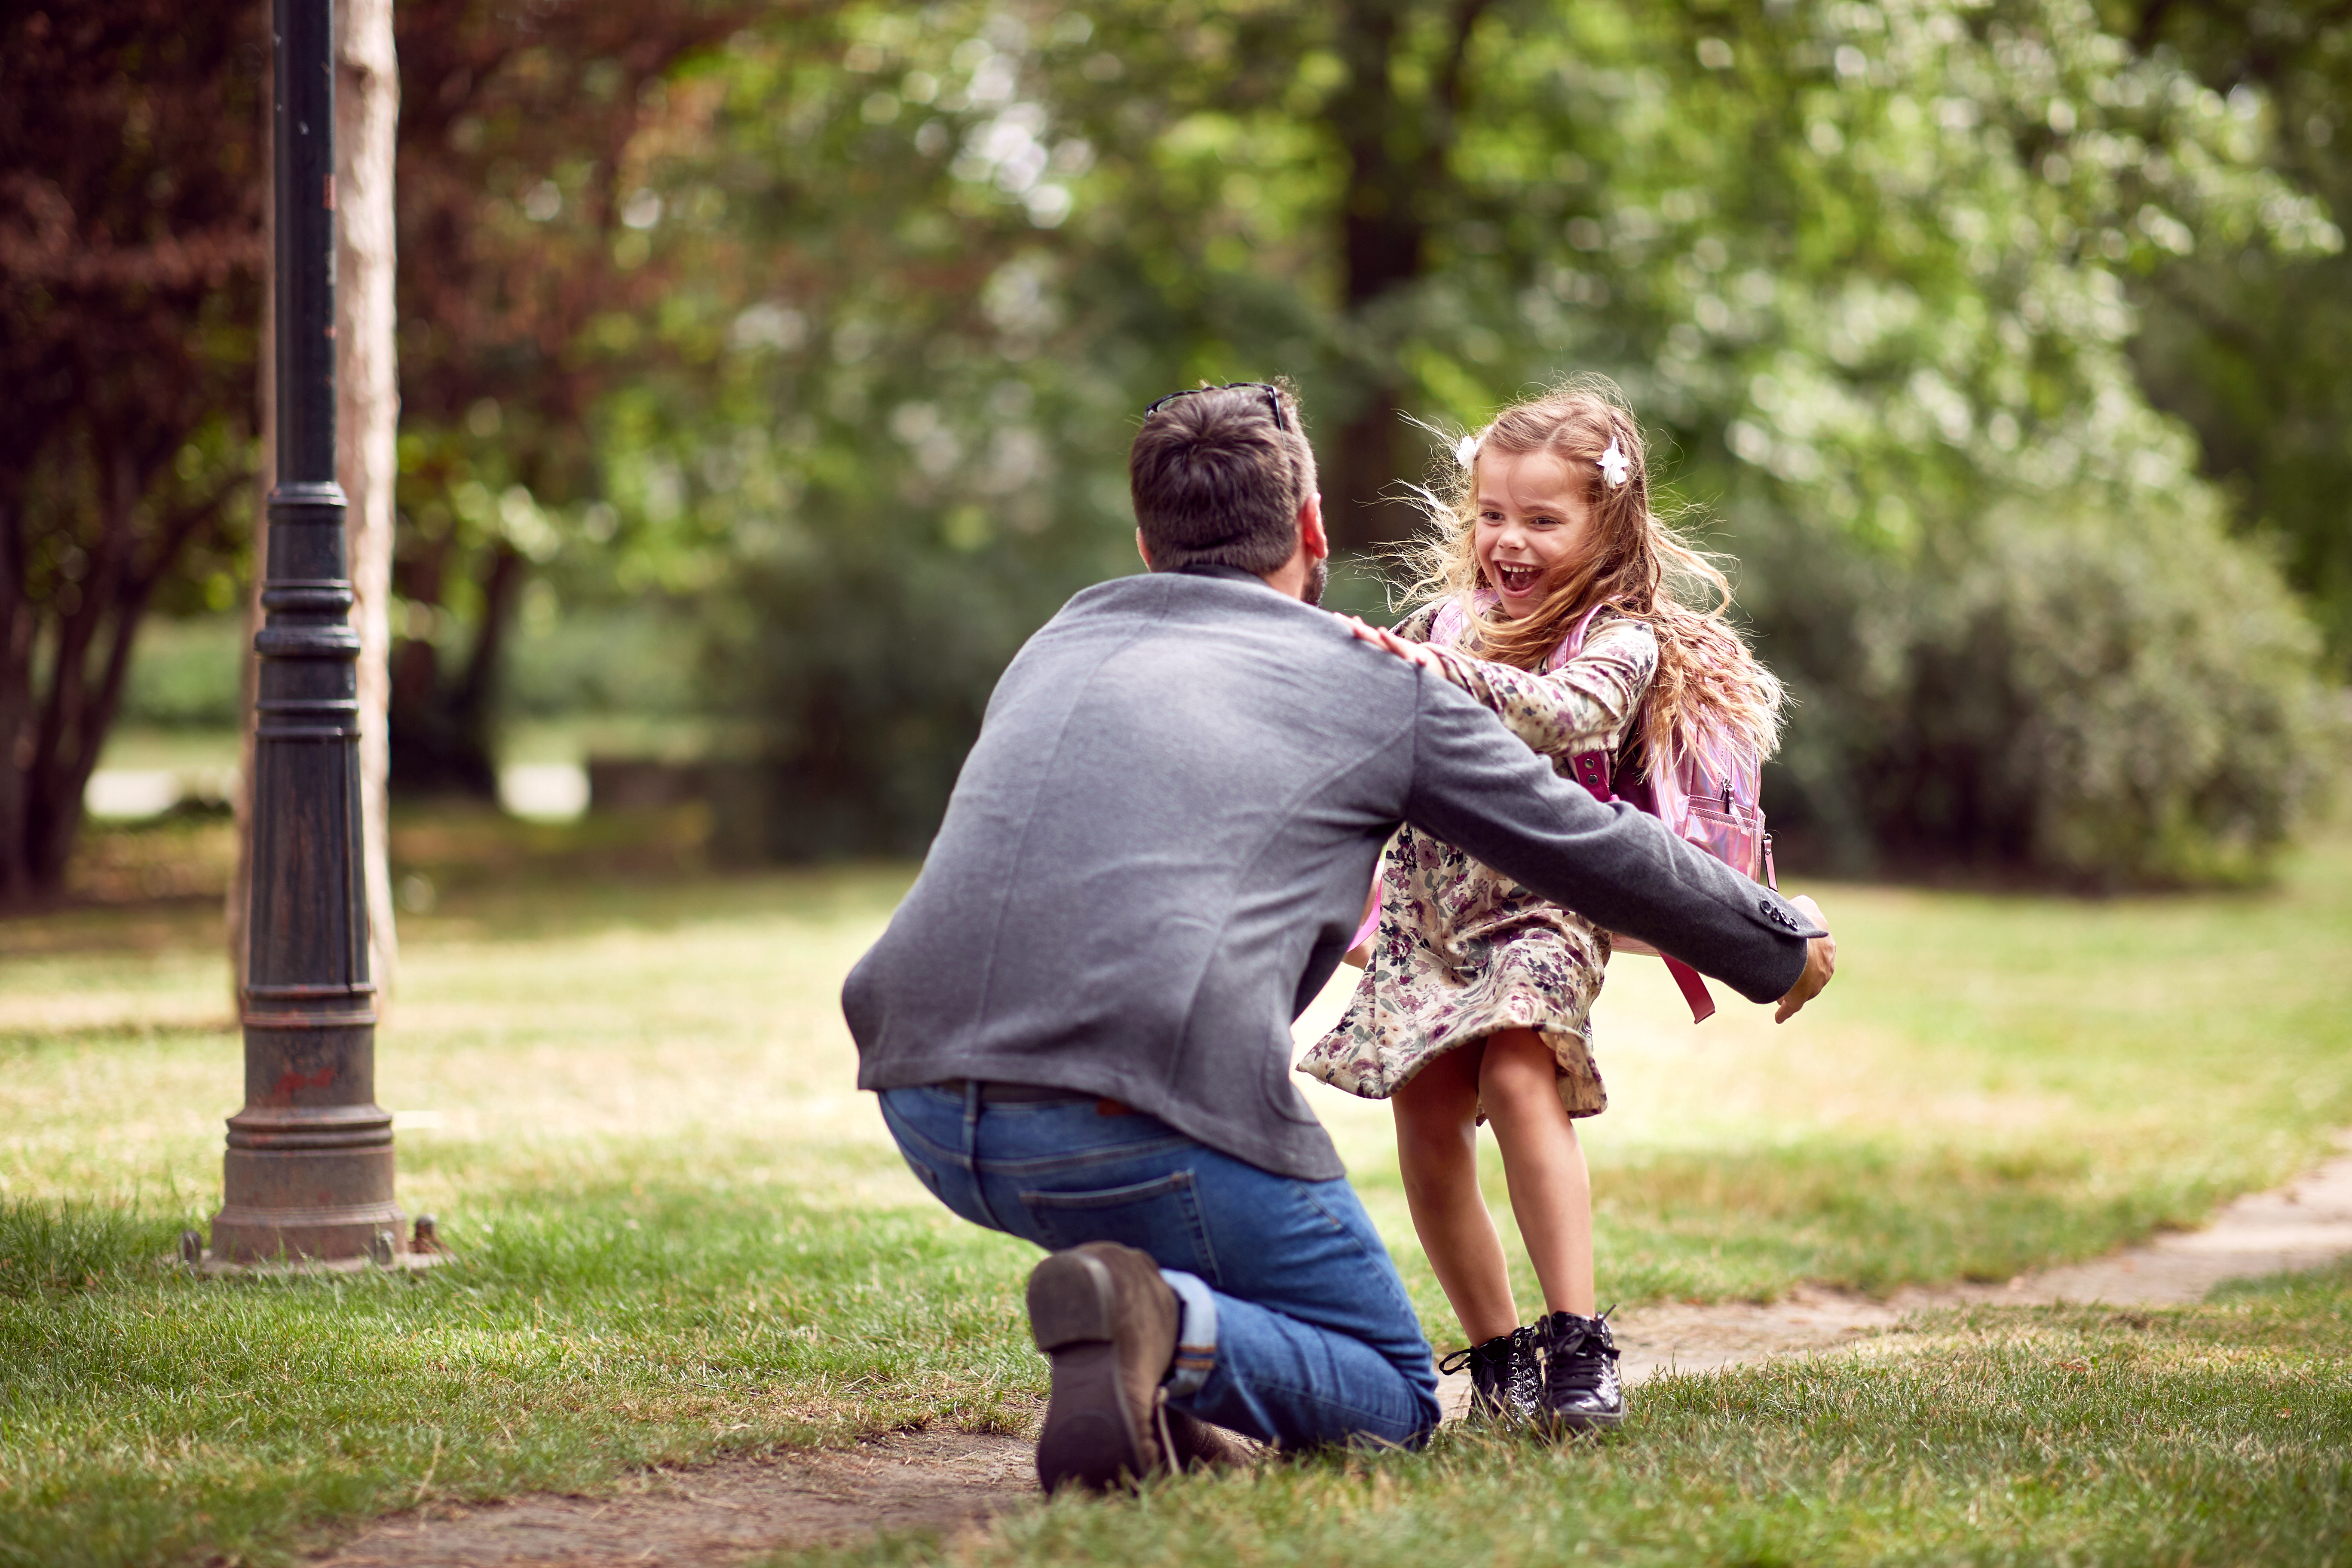 Padre abrazando a su hija. | Fuente: Shutterstock